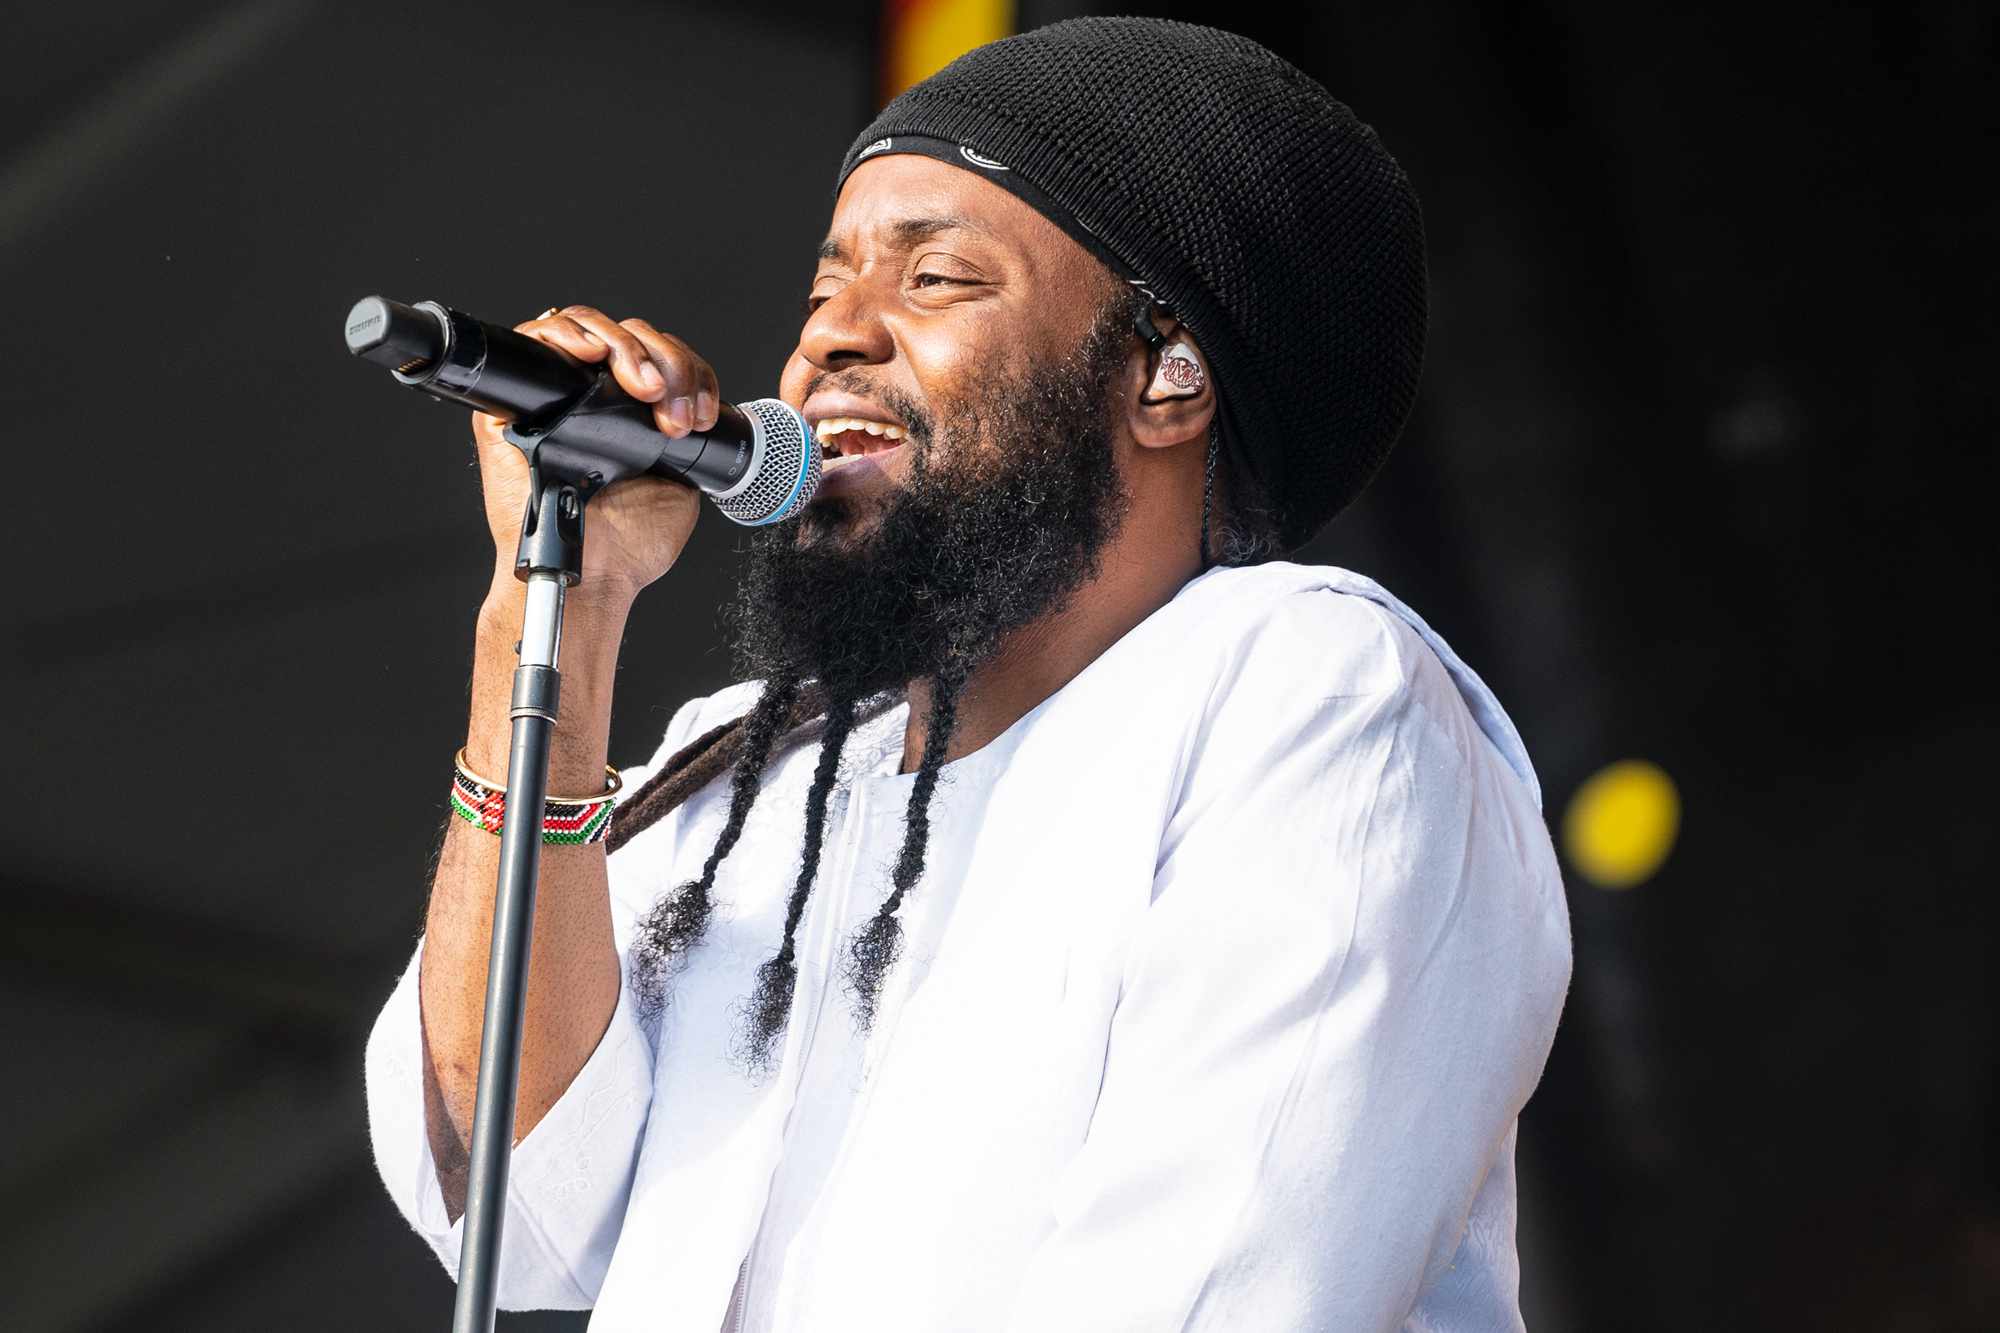 reggae musician peetah morgan of morgan heritage dead at 46